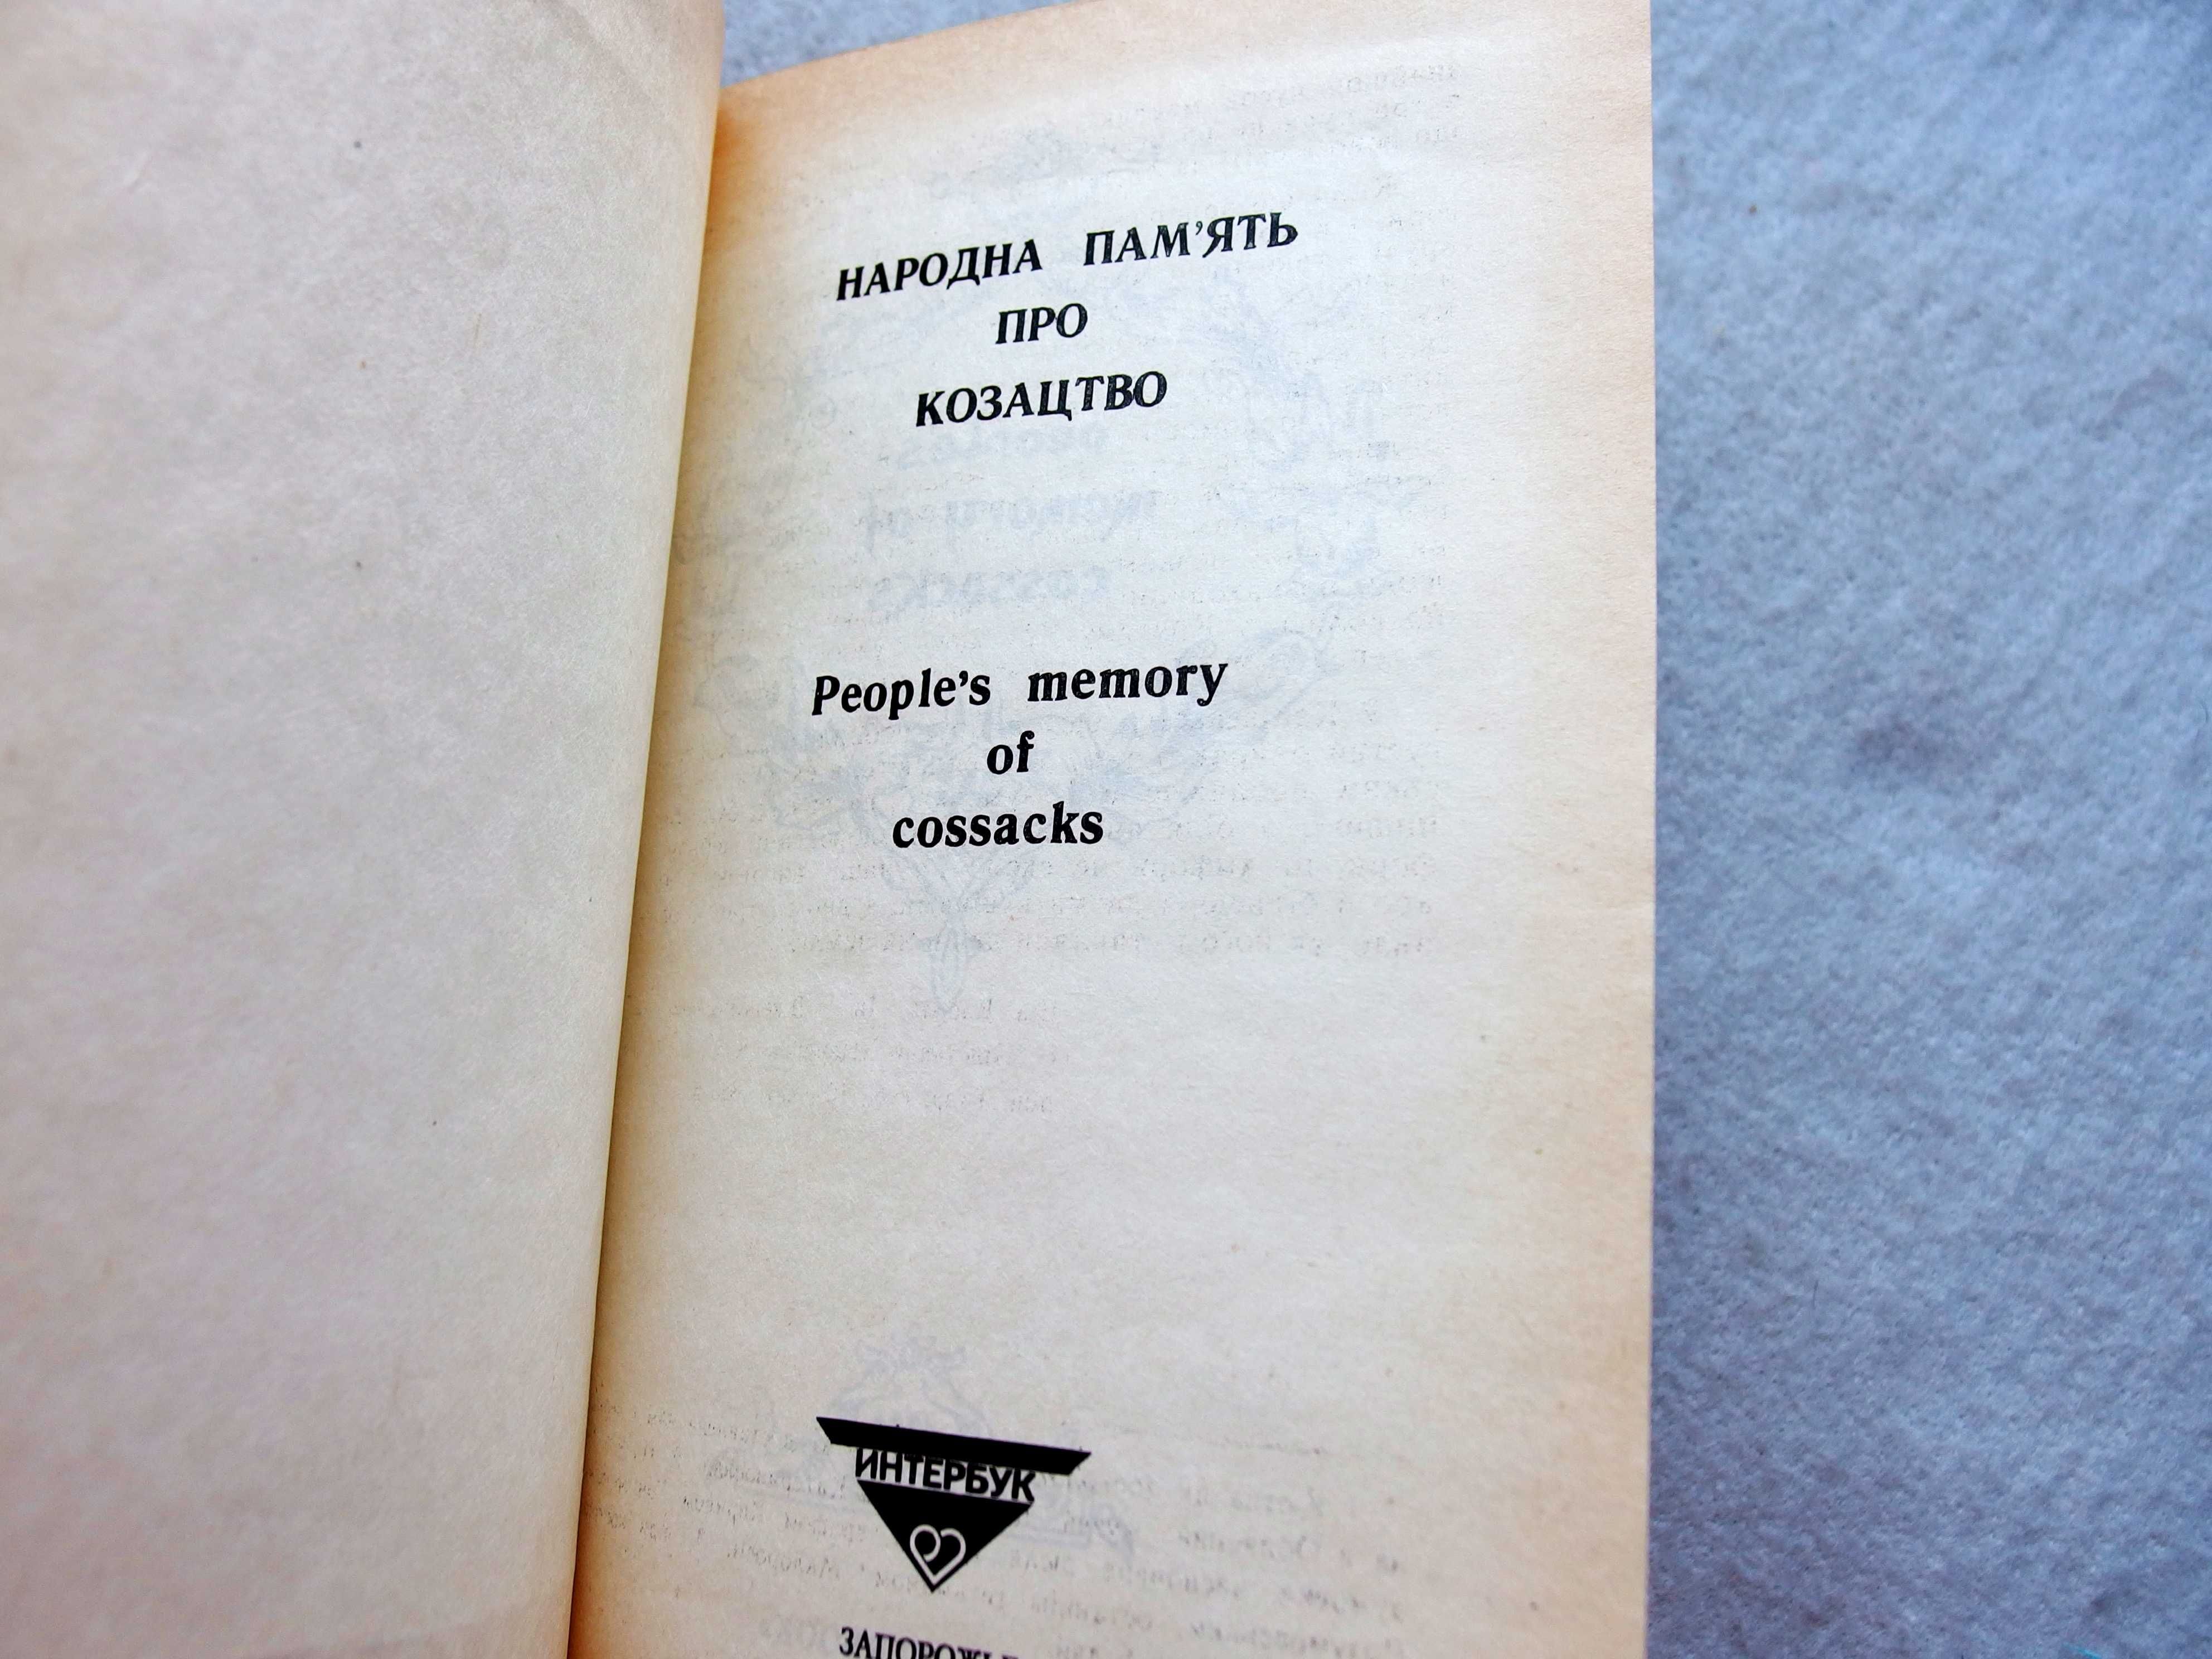 Книга "Народна пам'ять про козацтво", Я. Новицкий, А. Сокульский.